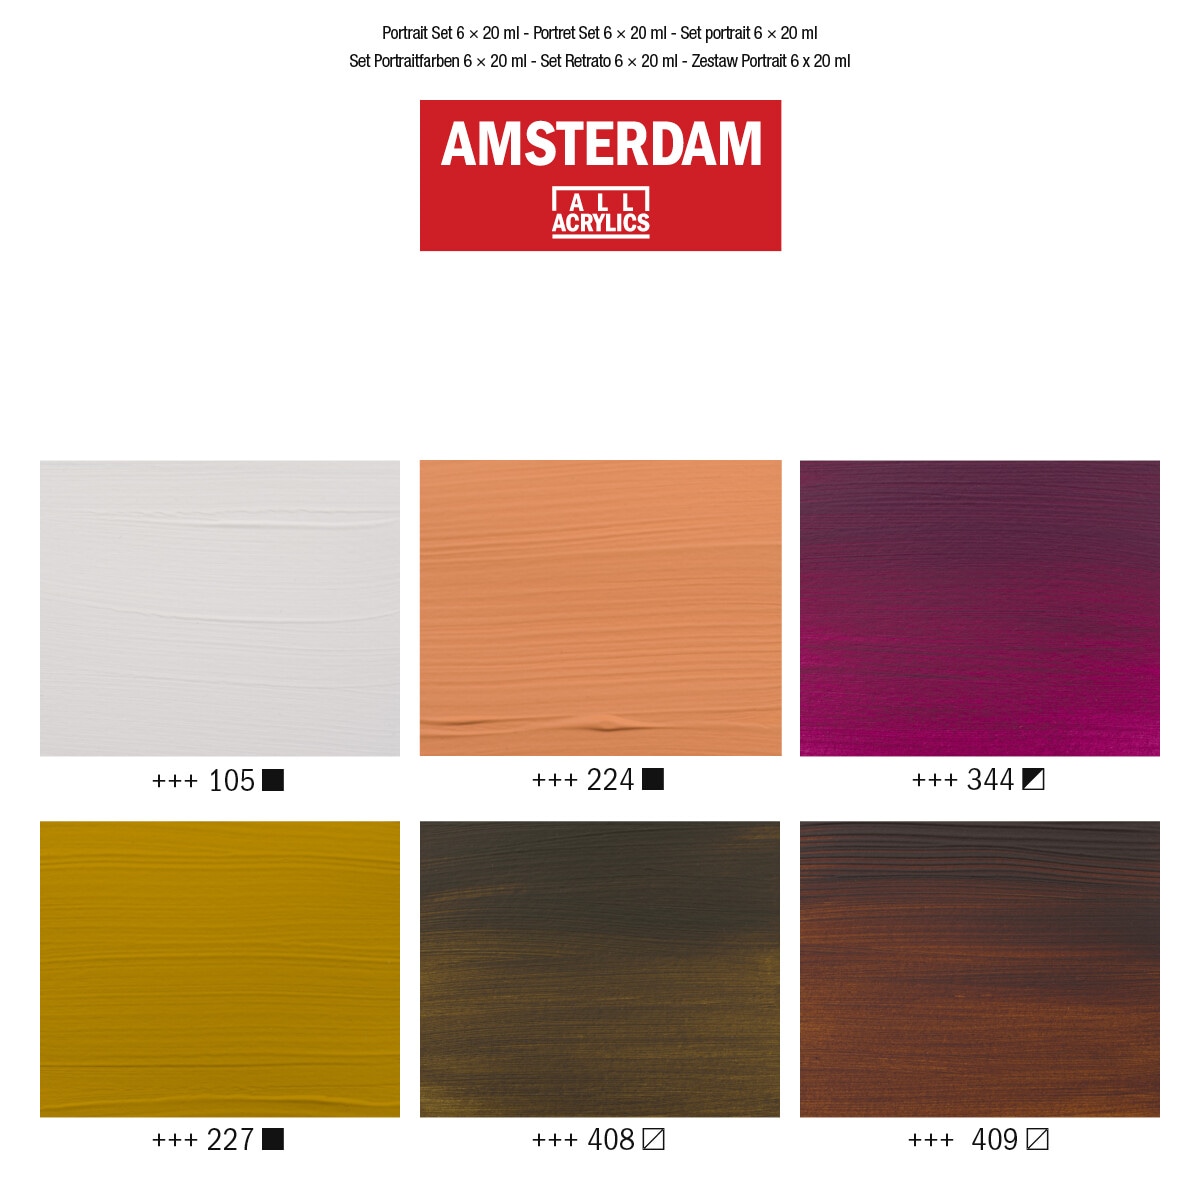 Набор акриловых красок Amsterdam Standart 6цв*20мл портрет